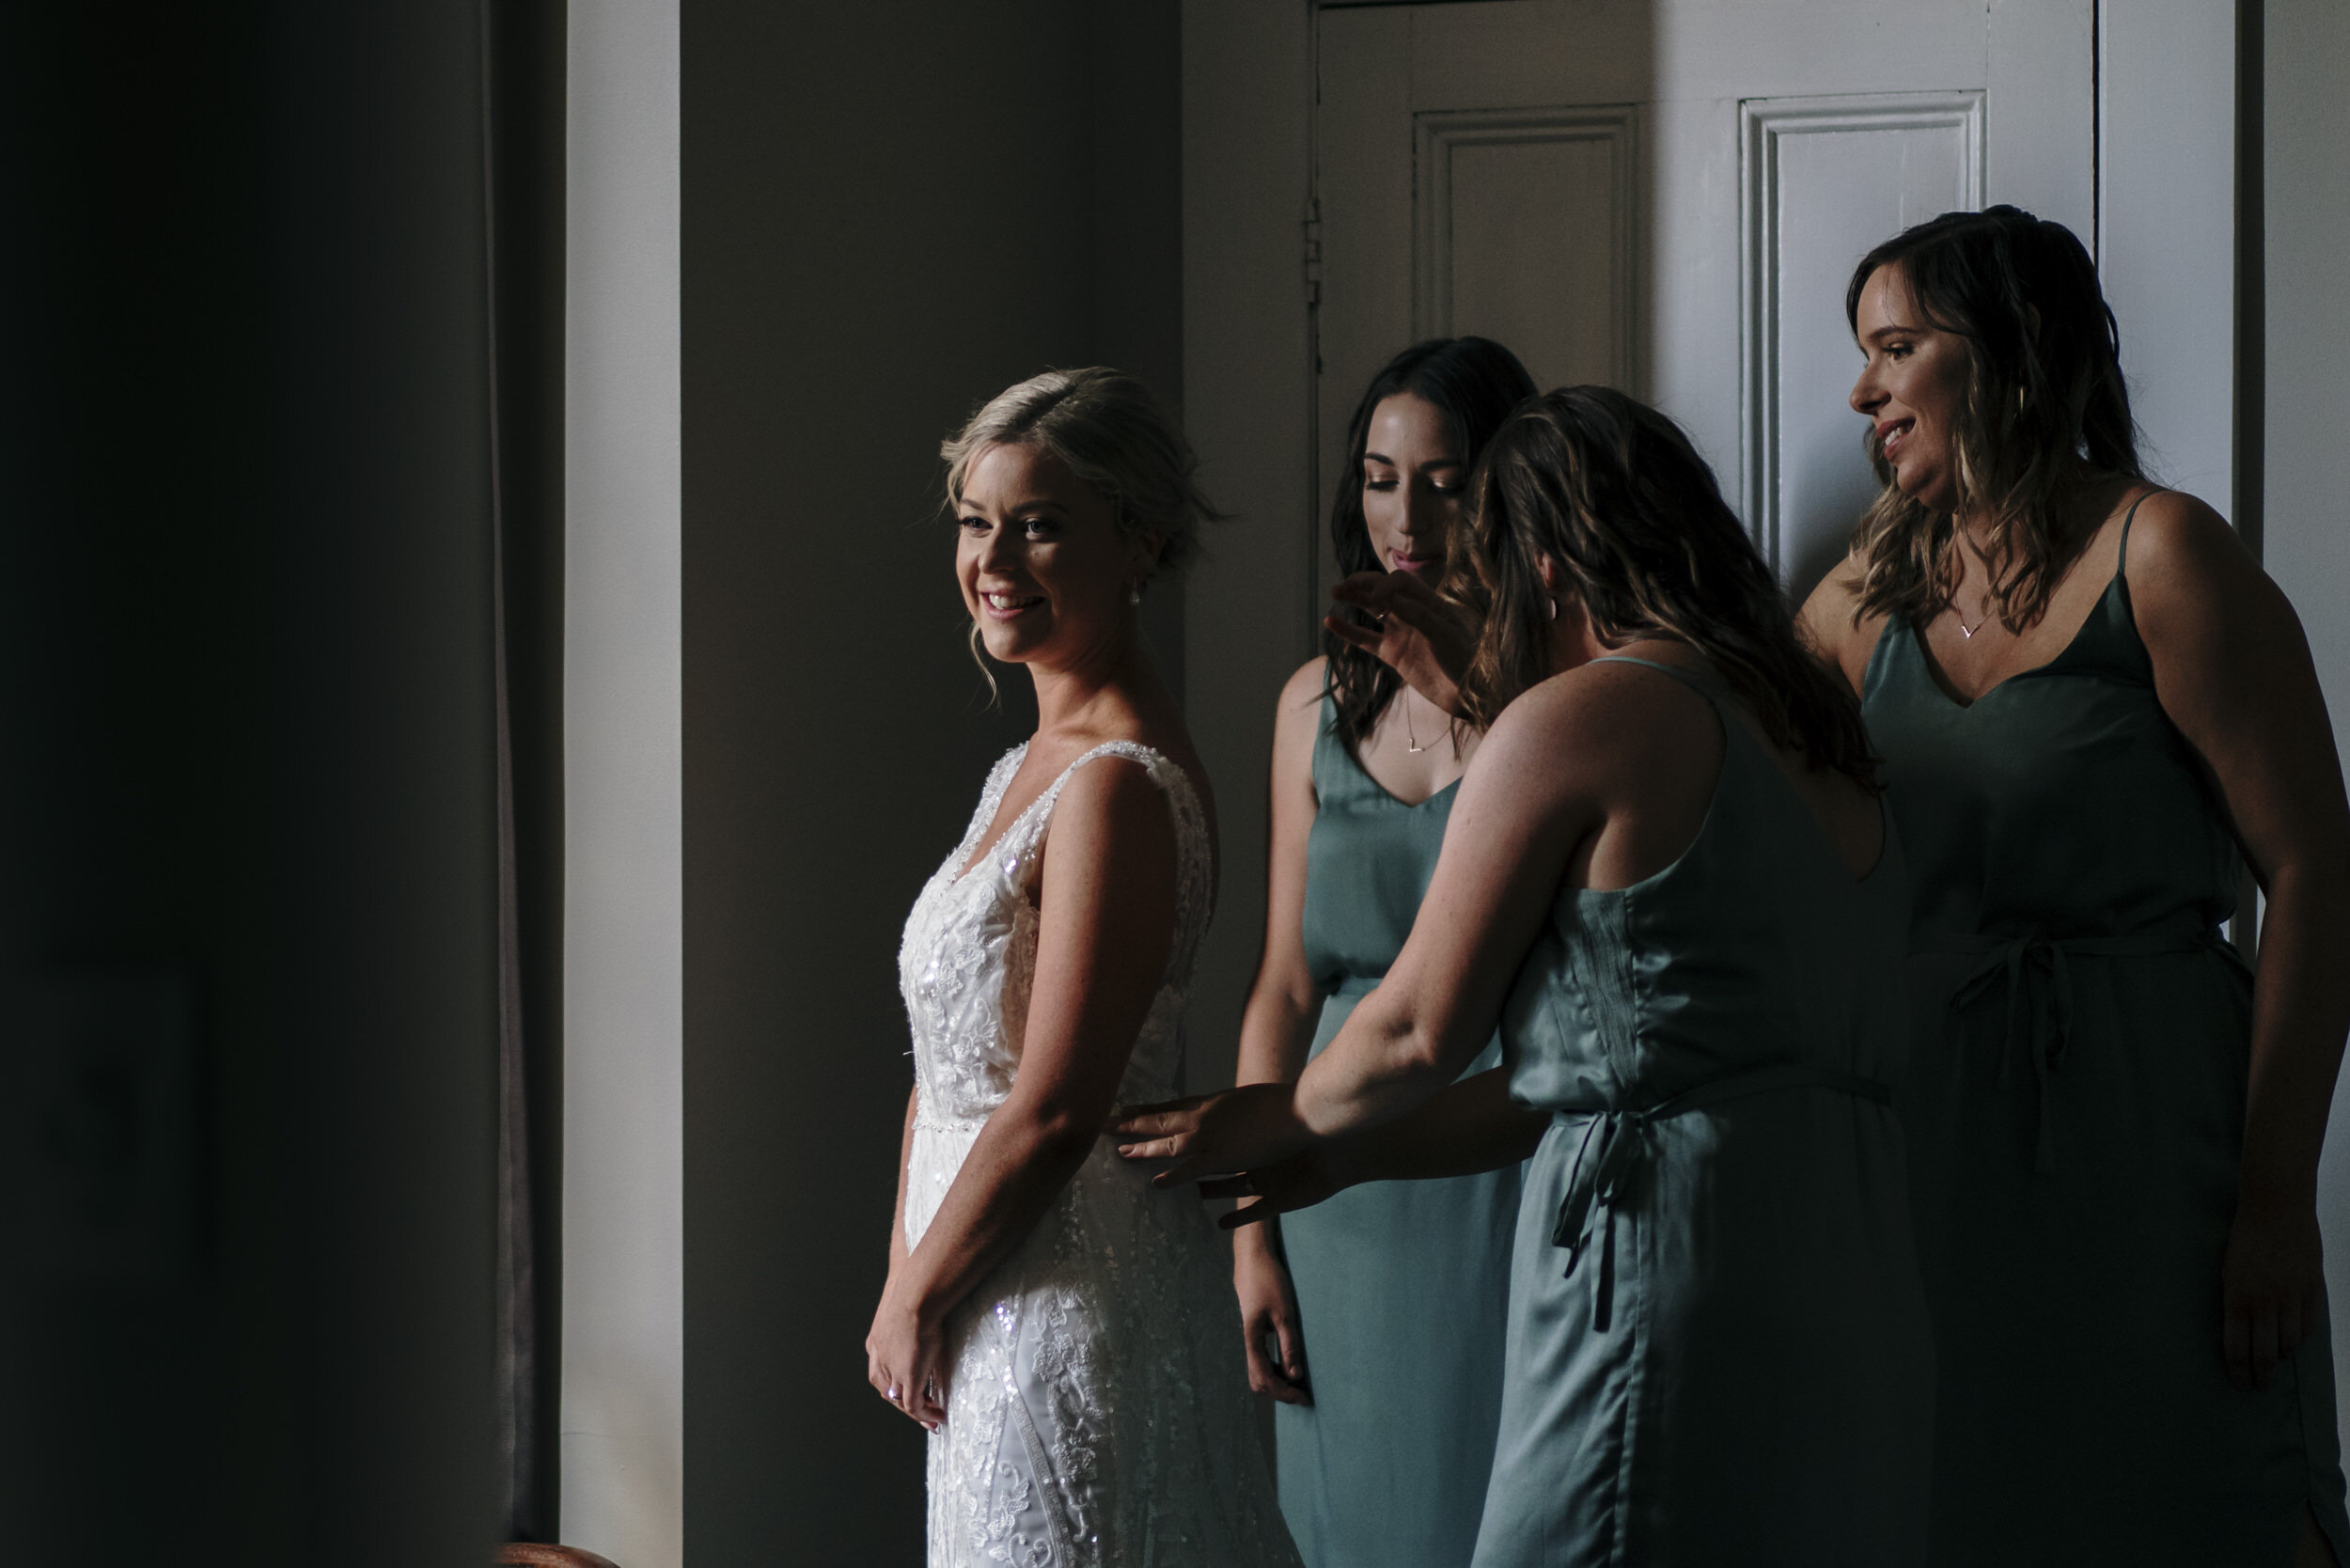 Broadlands Lodge Wedding Venue | Taupo Venue | Auckland Wedding Photographer | Auckland Wedding Videography | Rustic Wedding